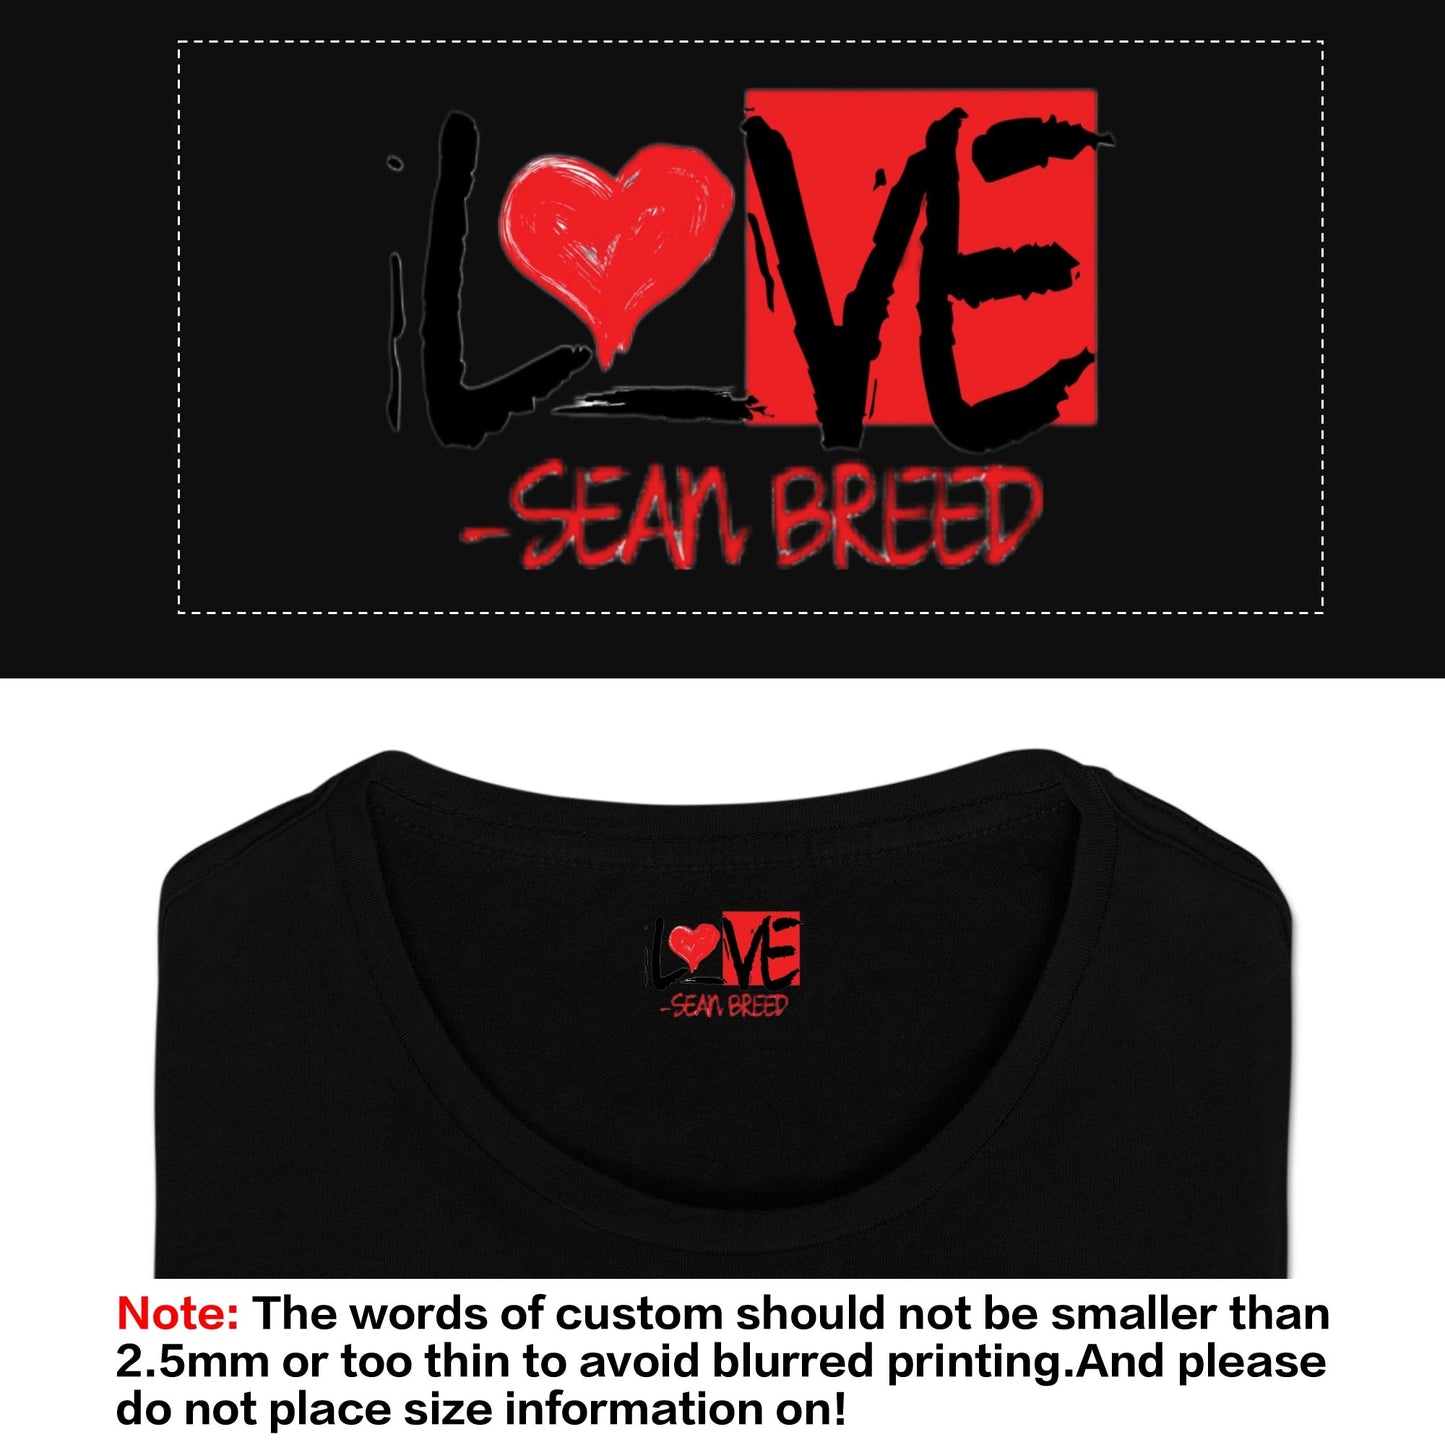 Mens Sean Breed Love NY Classic T-Shirt